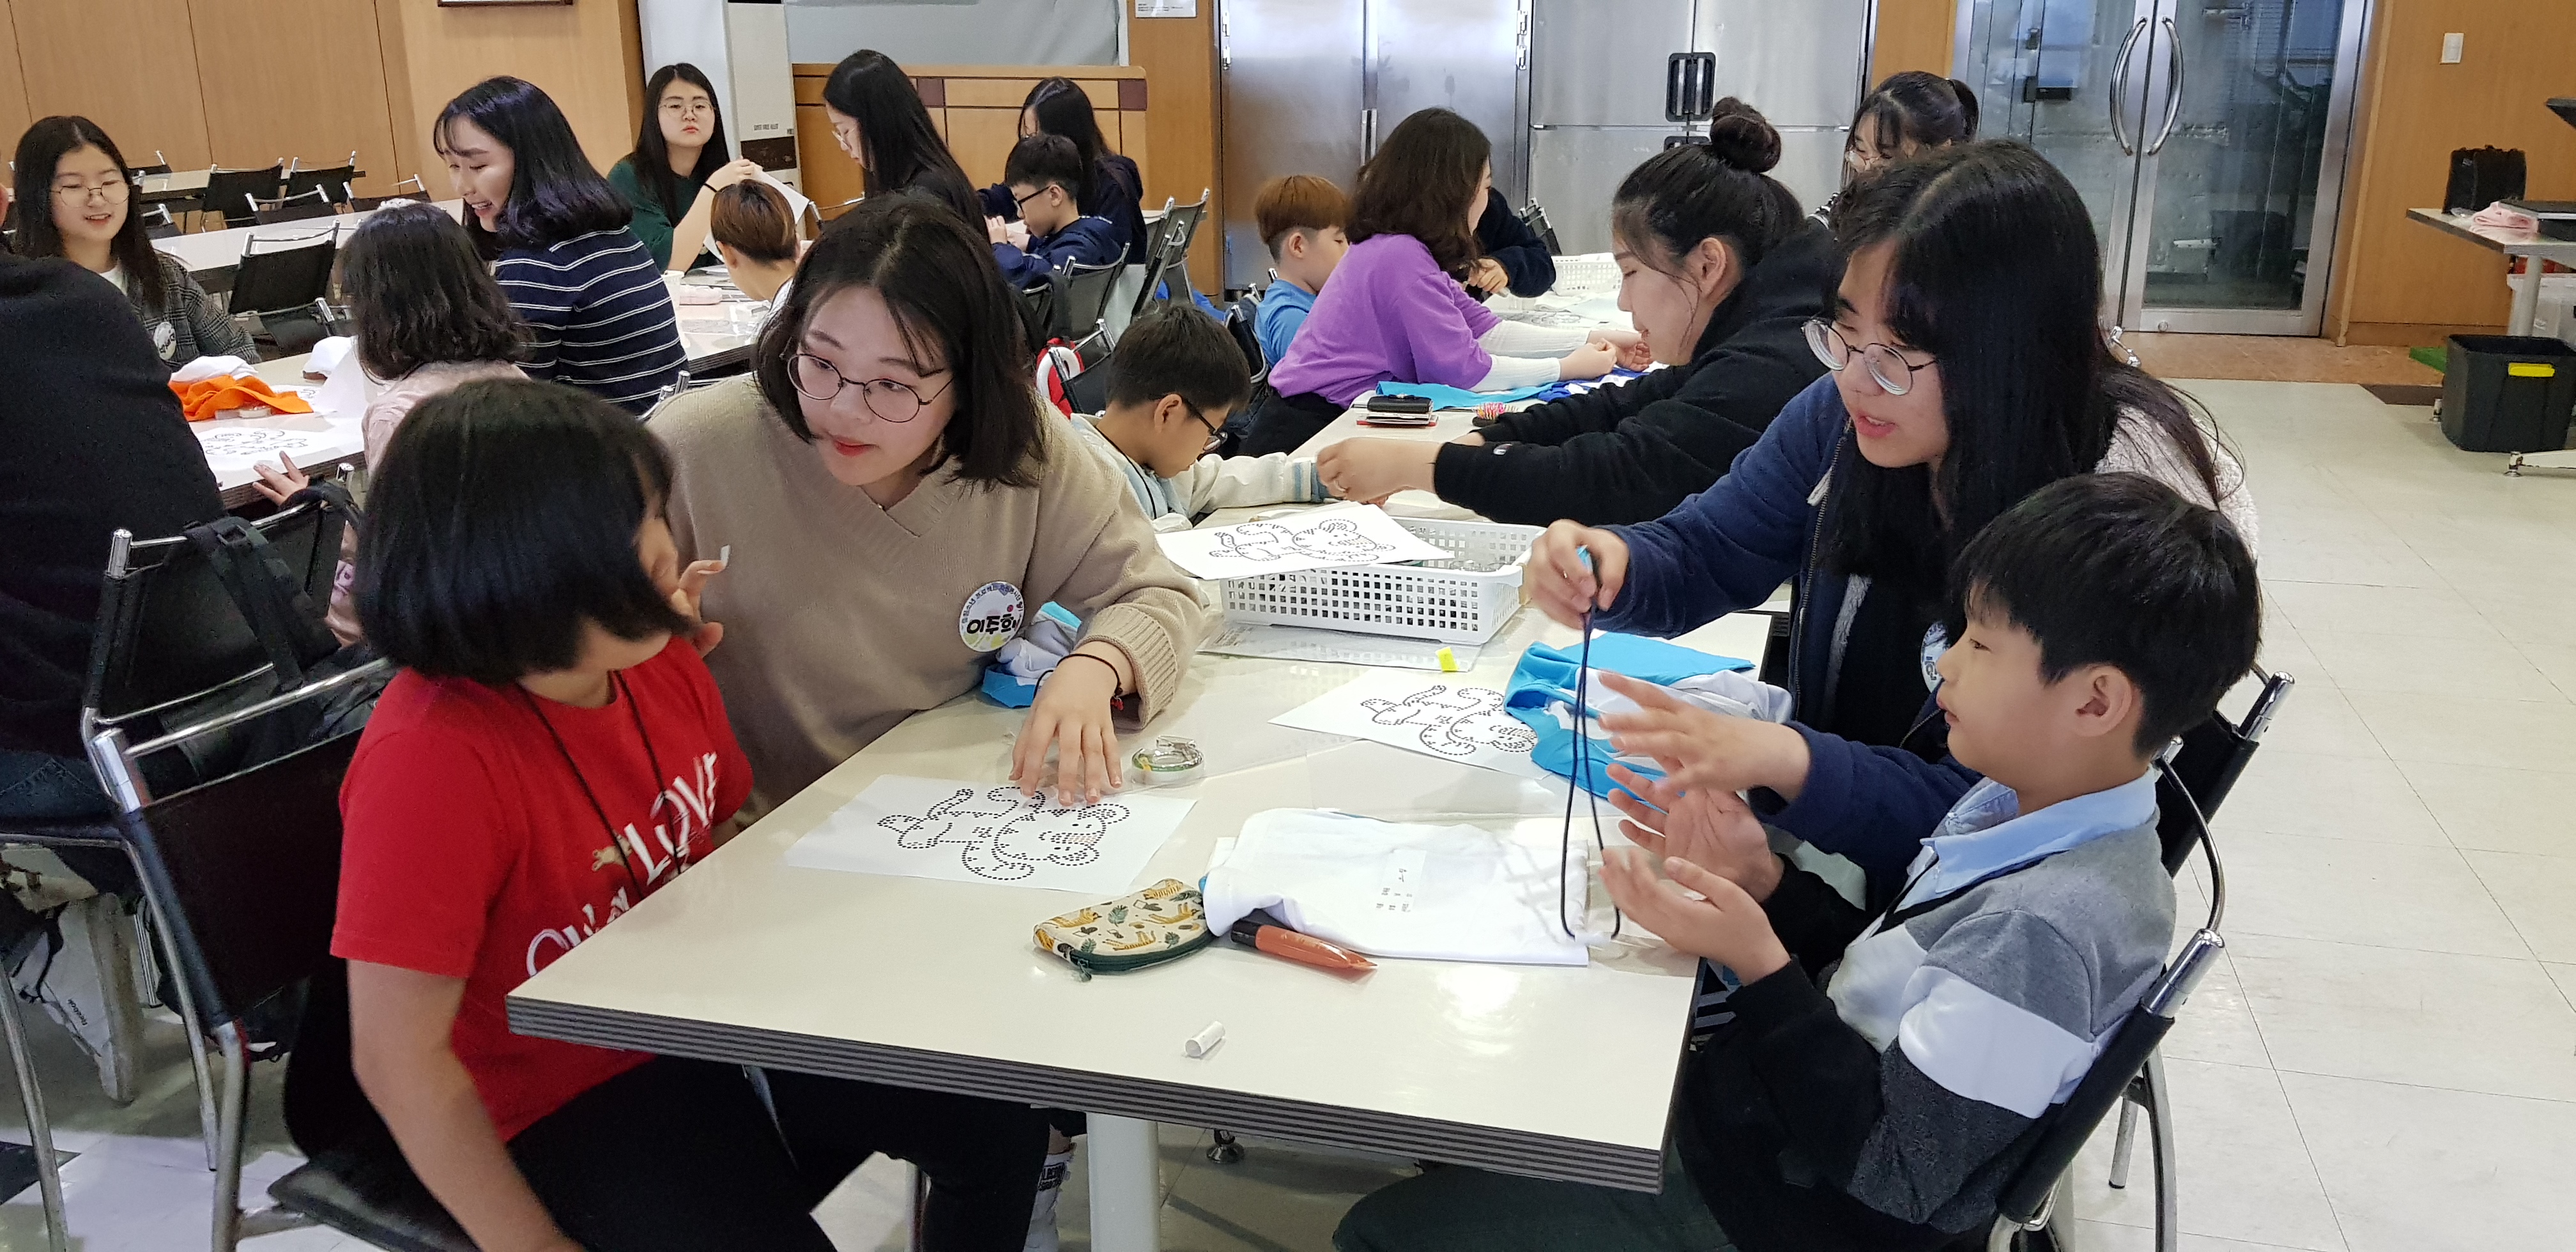 지난해 여름방학에 진행한 서울 금천구의 자원봉사 프로그램에 참여한 청소년들이 지역아동센터 어린이들과 ‘핫픽스 티셔츠 만들기’ 활동을 하고 있다.  금천구 제공 